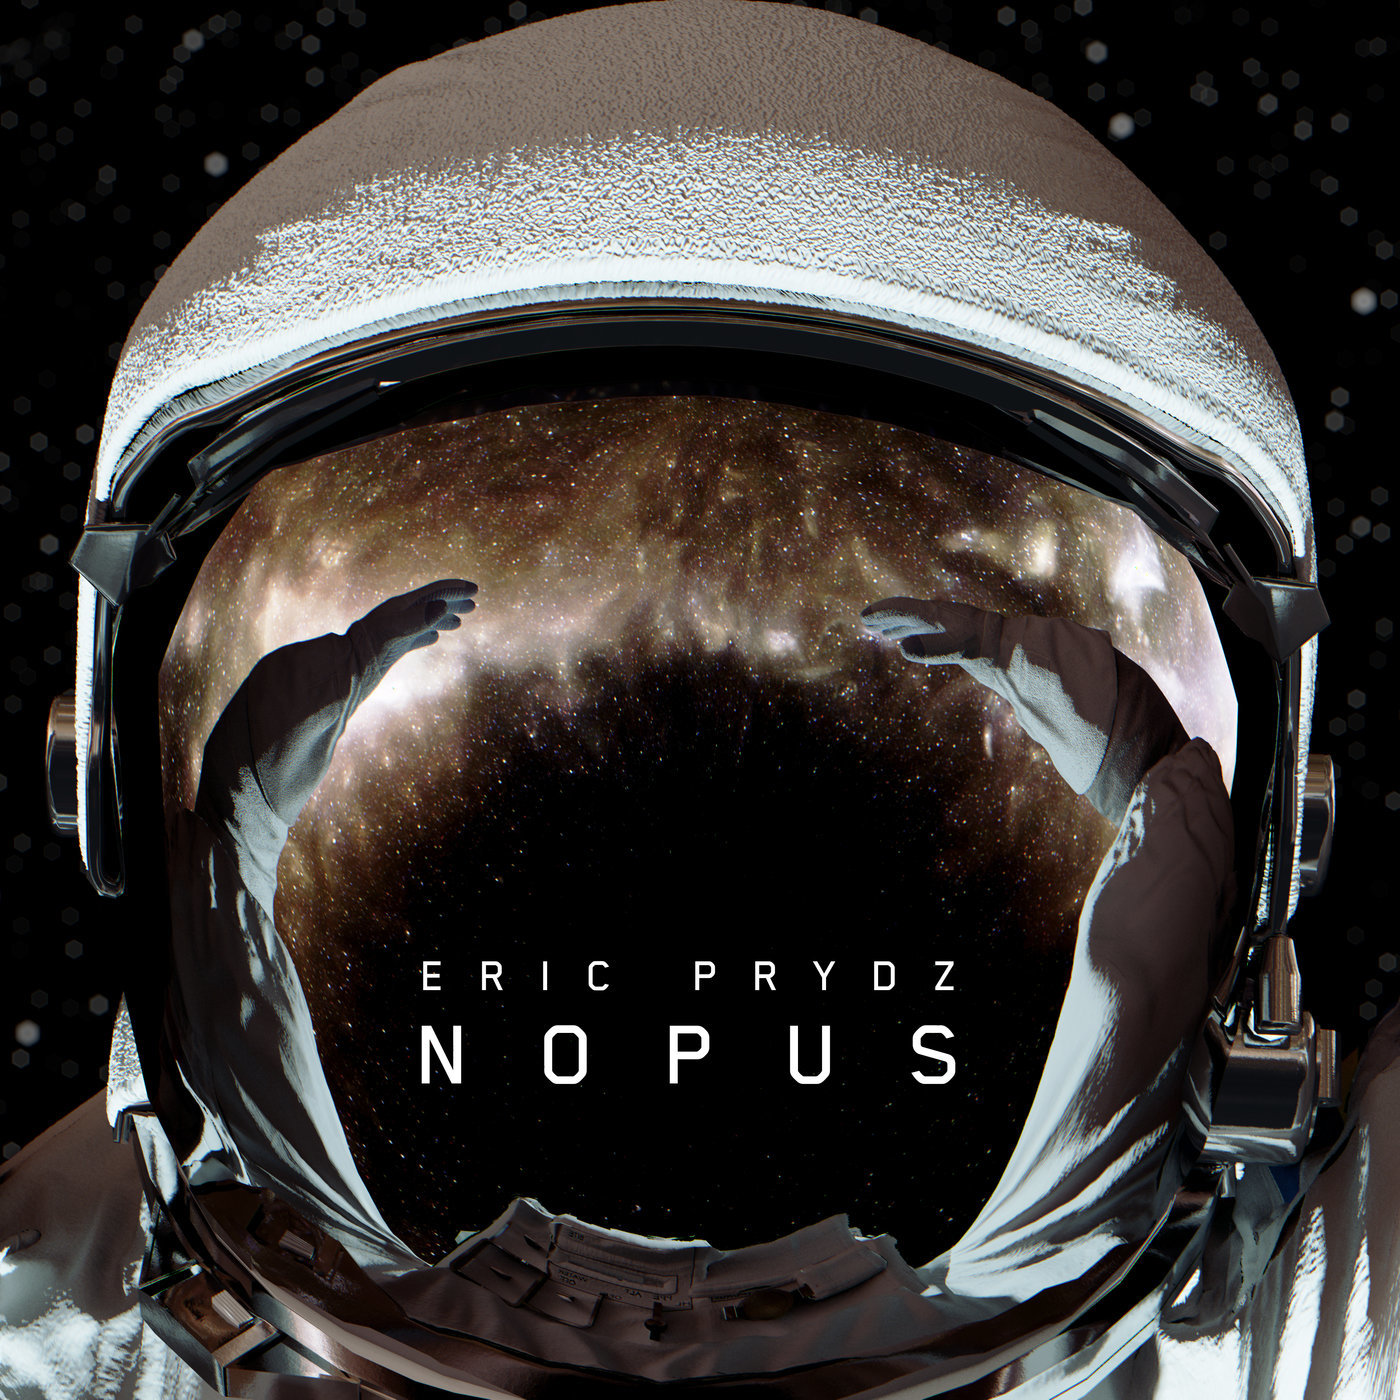 Eric Prydz - Nopus (Extended Mix)